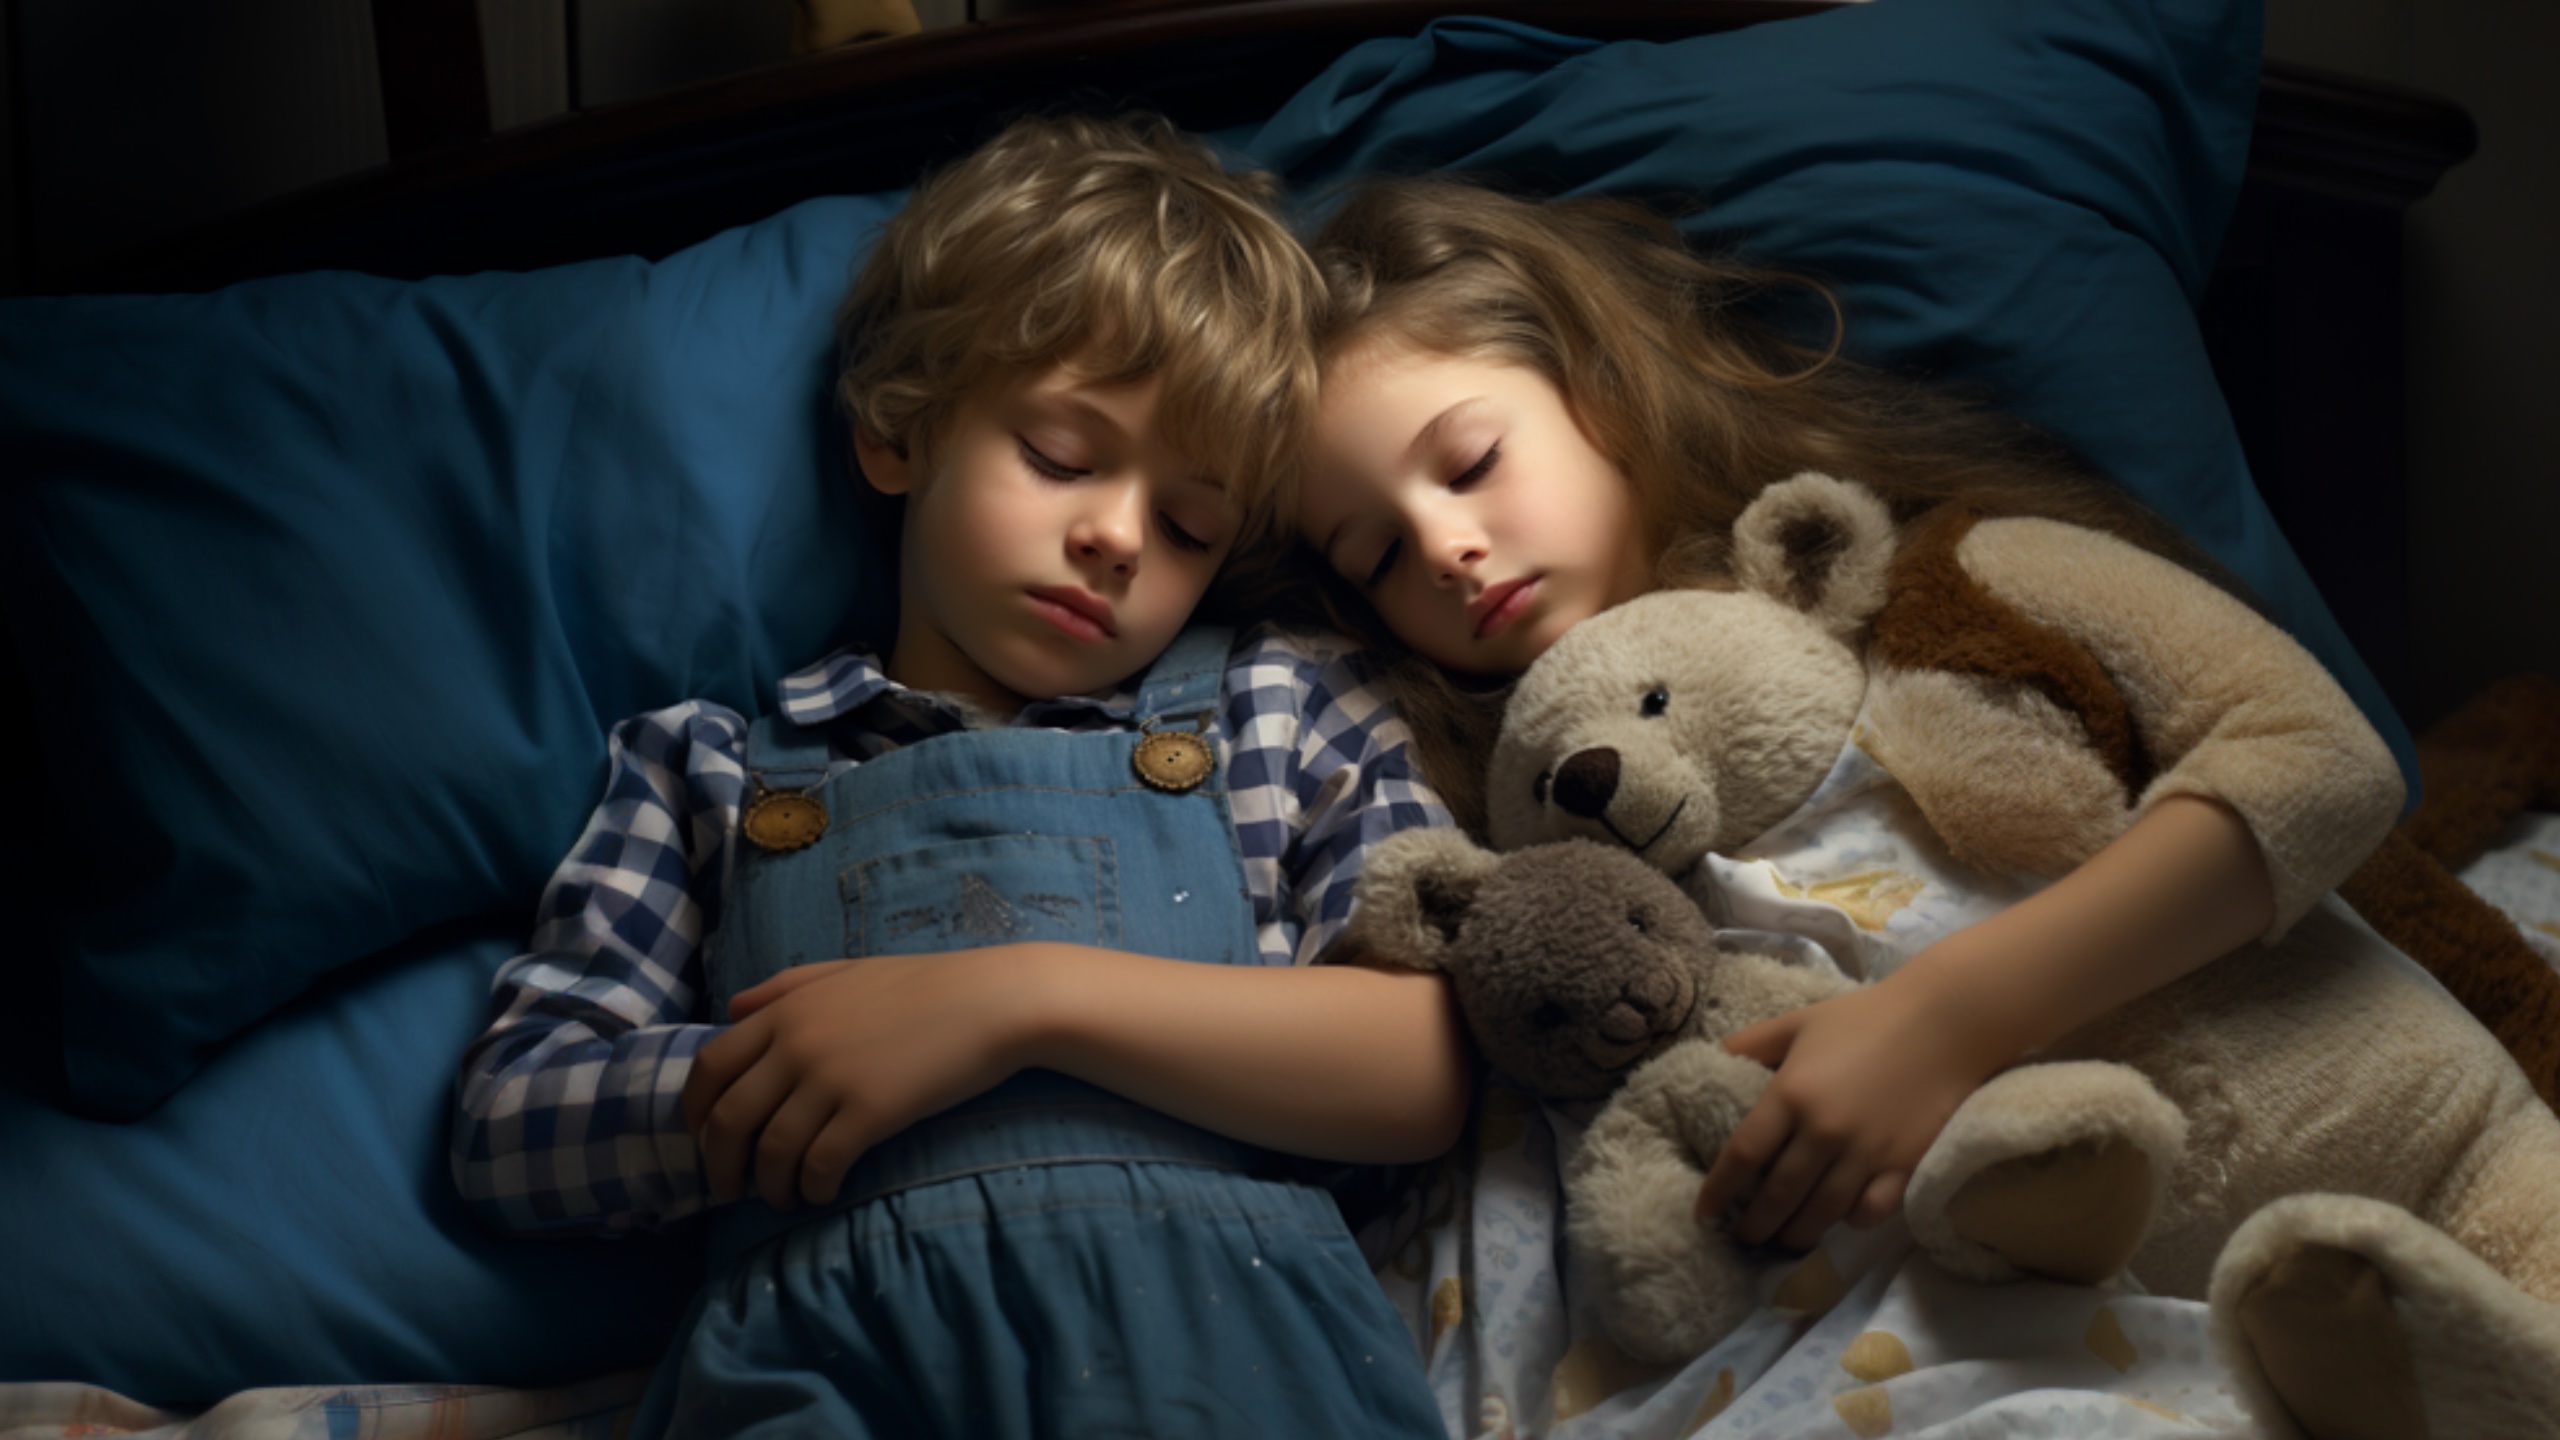 Preocupări juridice și etice ridicate pe măsură ce IA generativă îi liniștește pe copii în pat